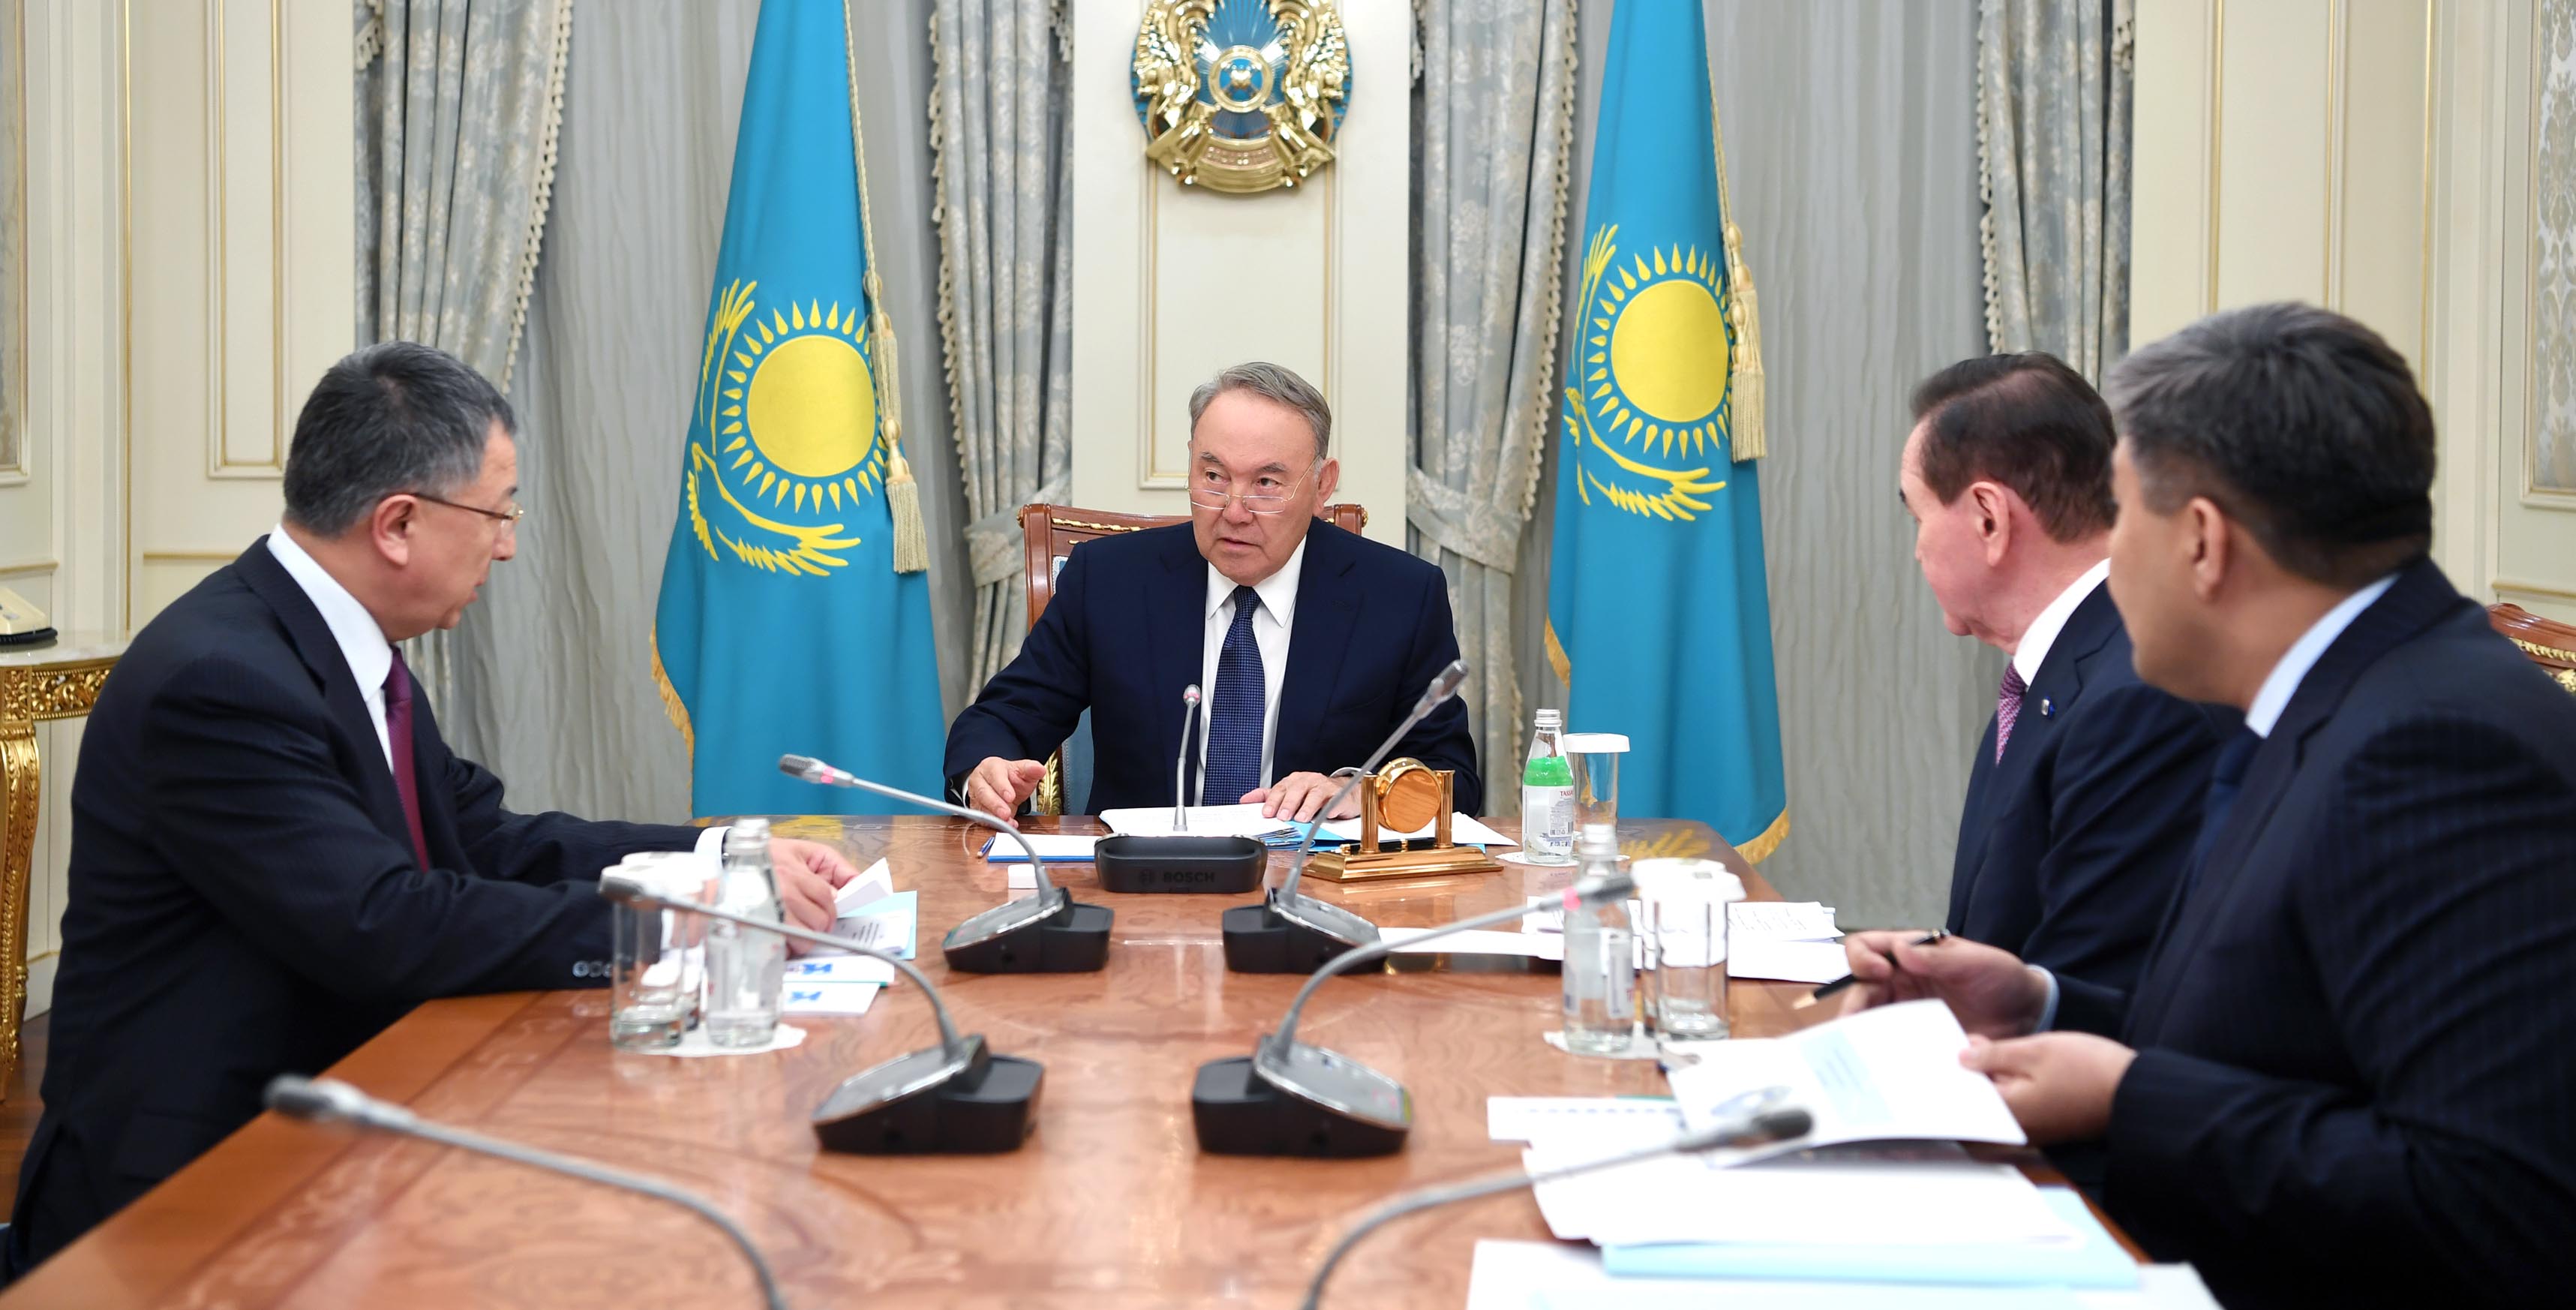 Елбасы поручил провести на должном уровне предстоящий юбилей Ассамблеи народа Казахстана 